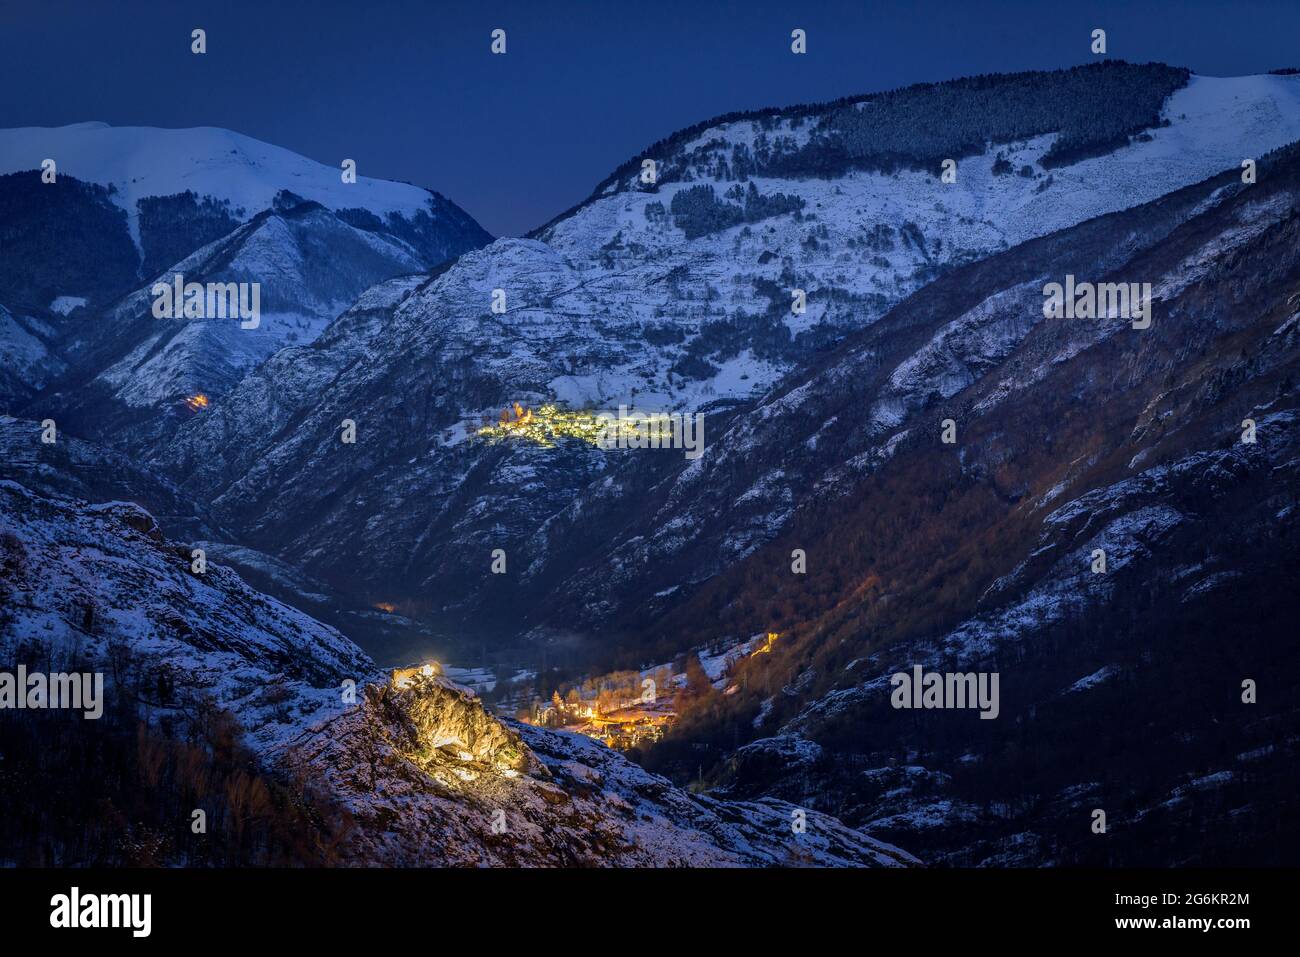 Canejan de nuit et enneigé vu du point de vue de Bossòst, sur la route de  l'Eth Portilhon (Vallée de l'Aran, Catalogne, Espagne, Pyrénées Photo Stock  - Alamy